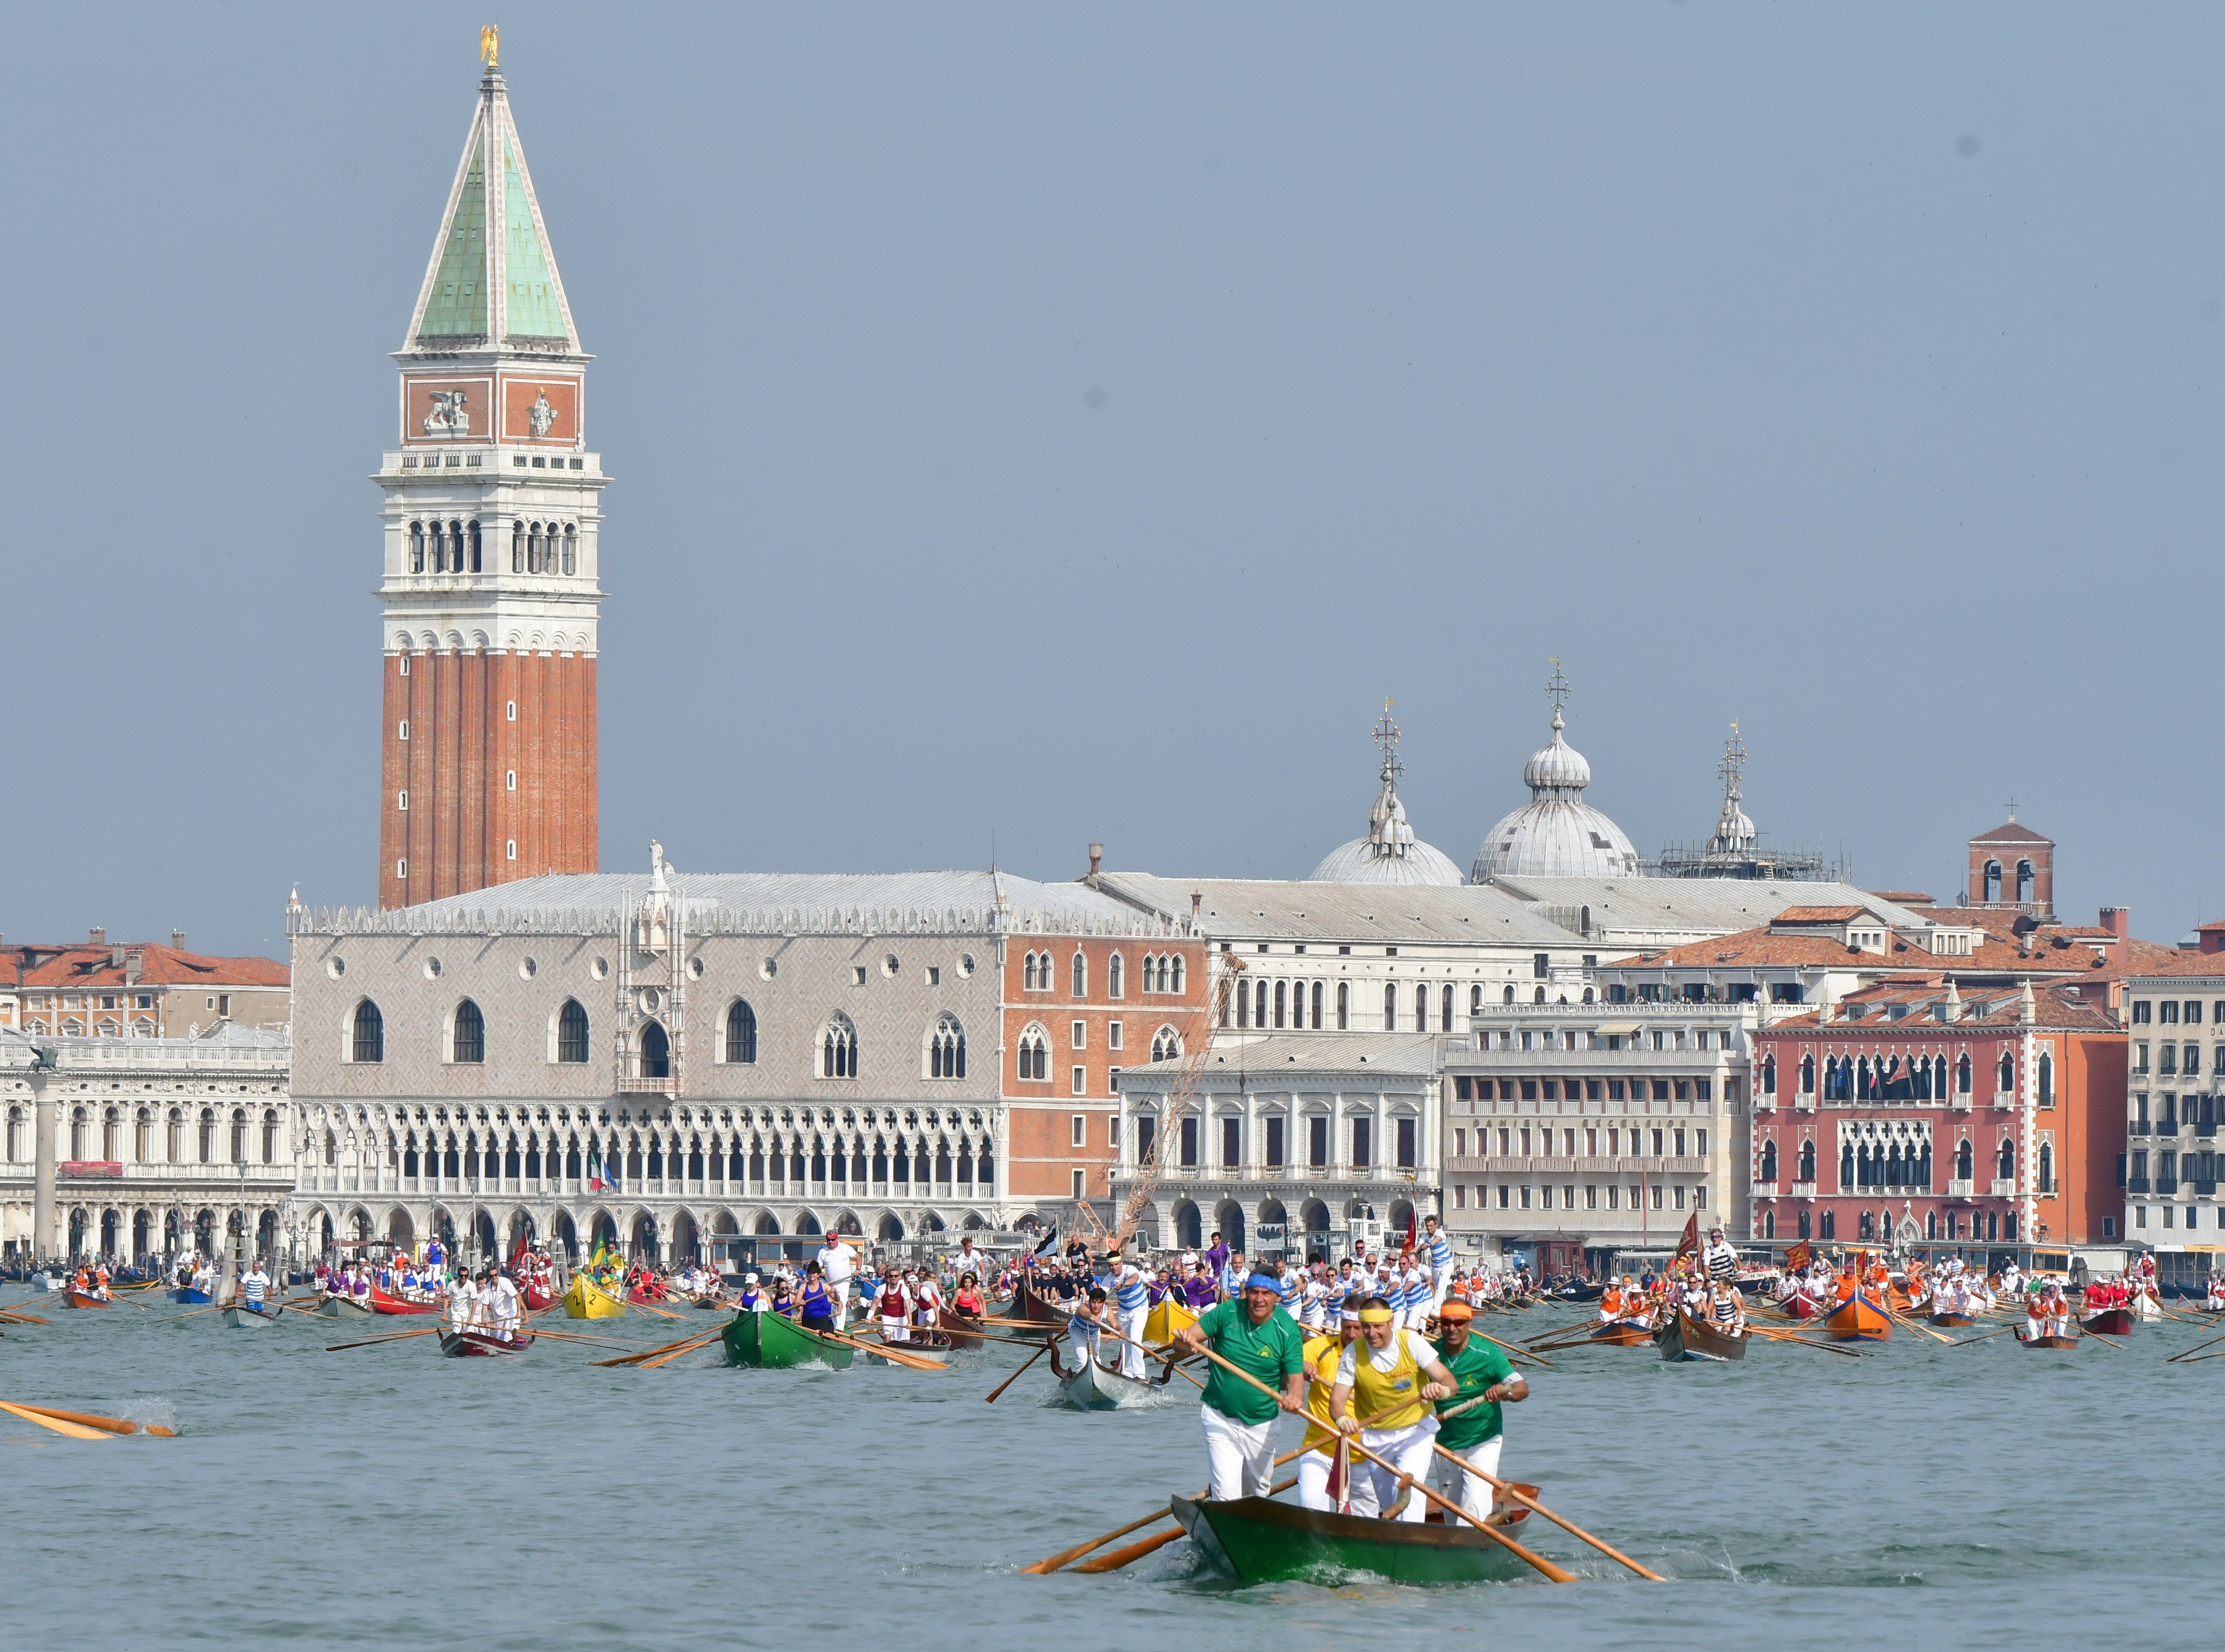 Venecia cobrará entrada para acceder a la ciudad a partir del verano de 2022